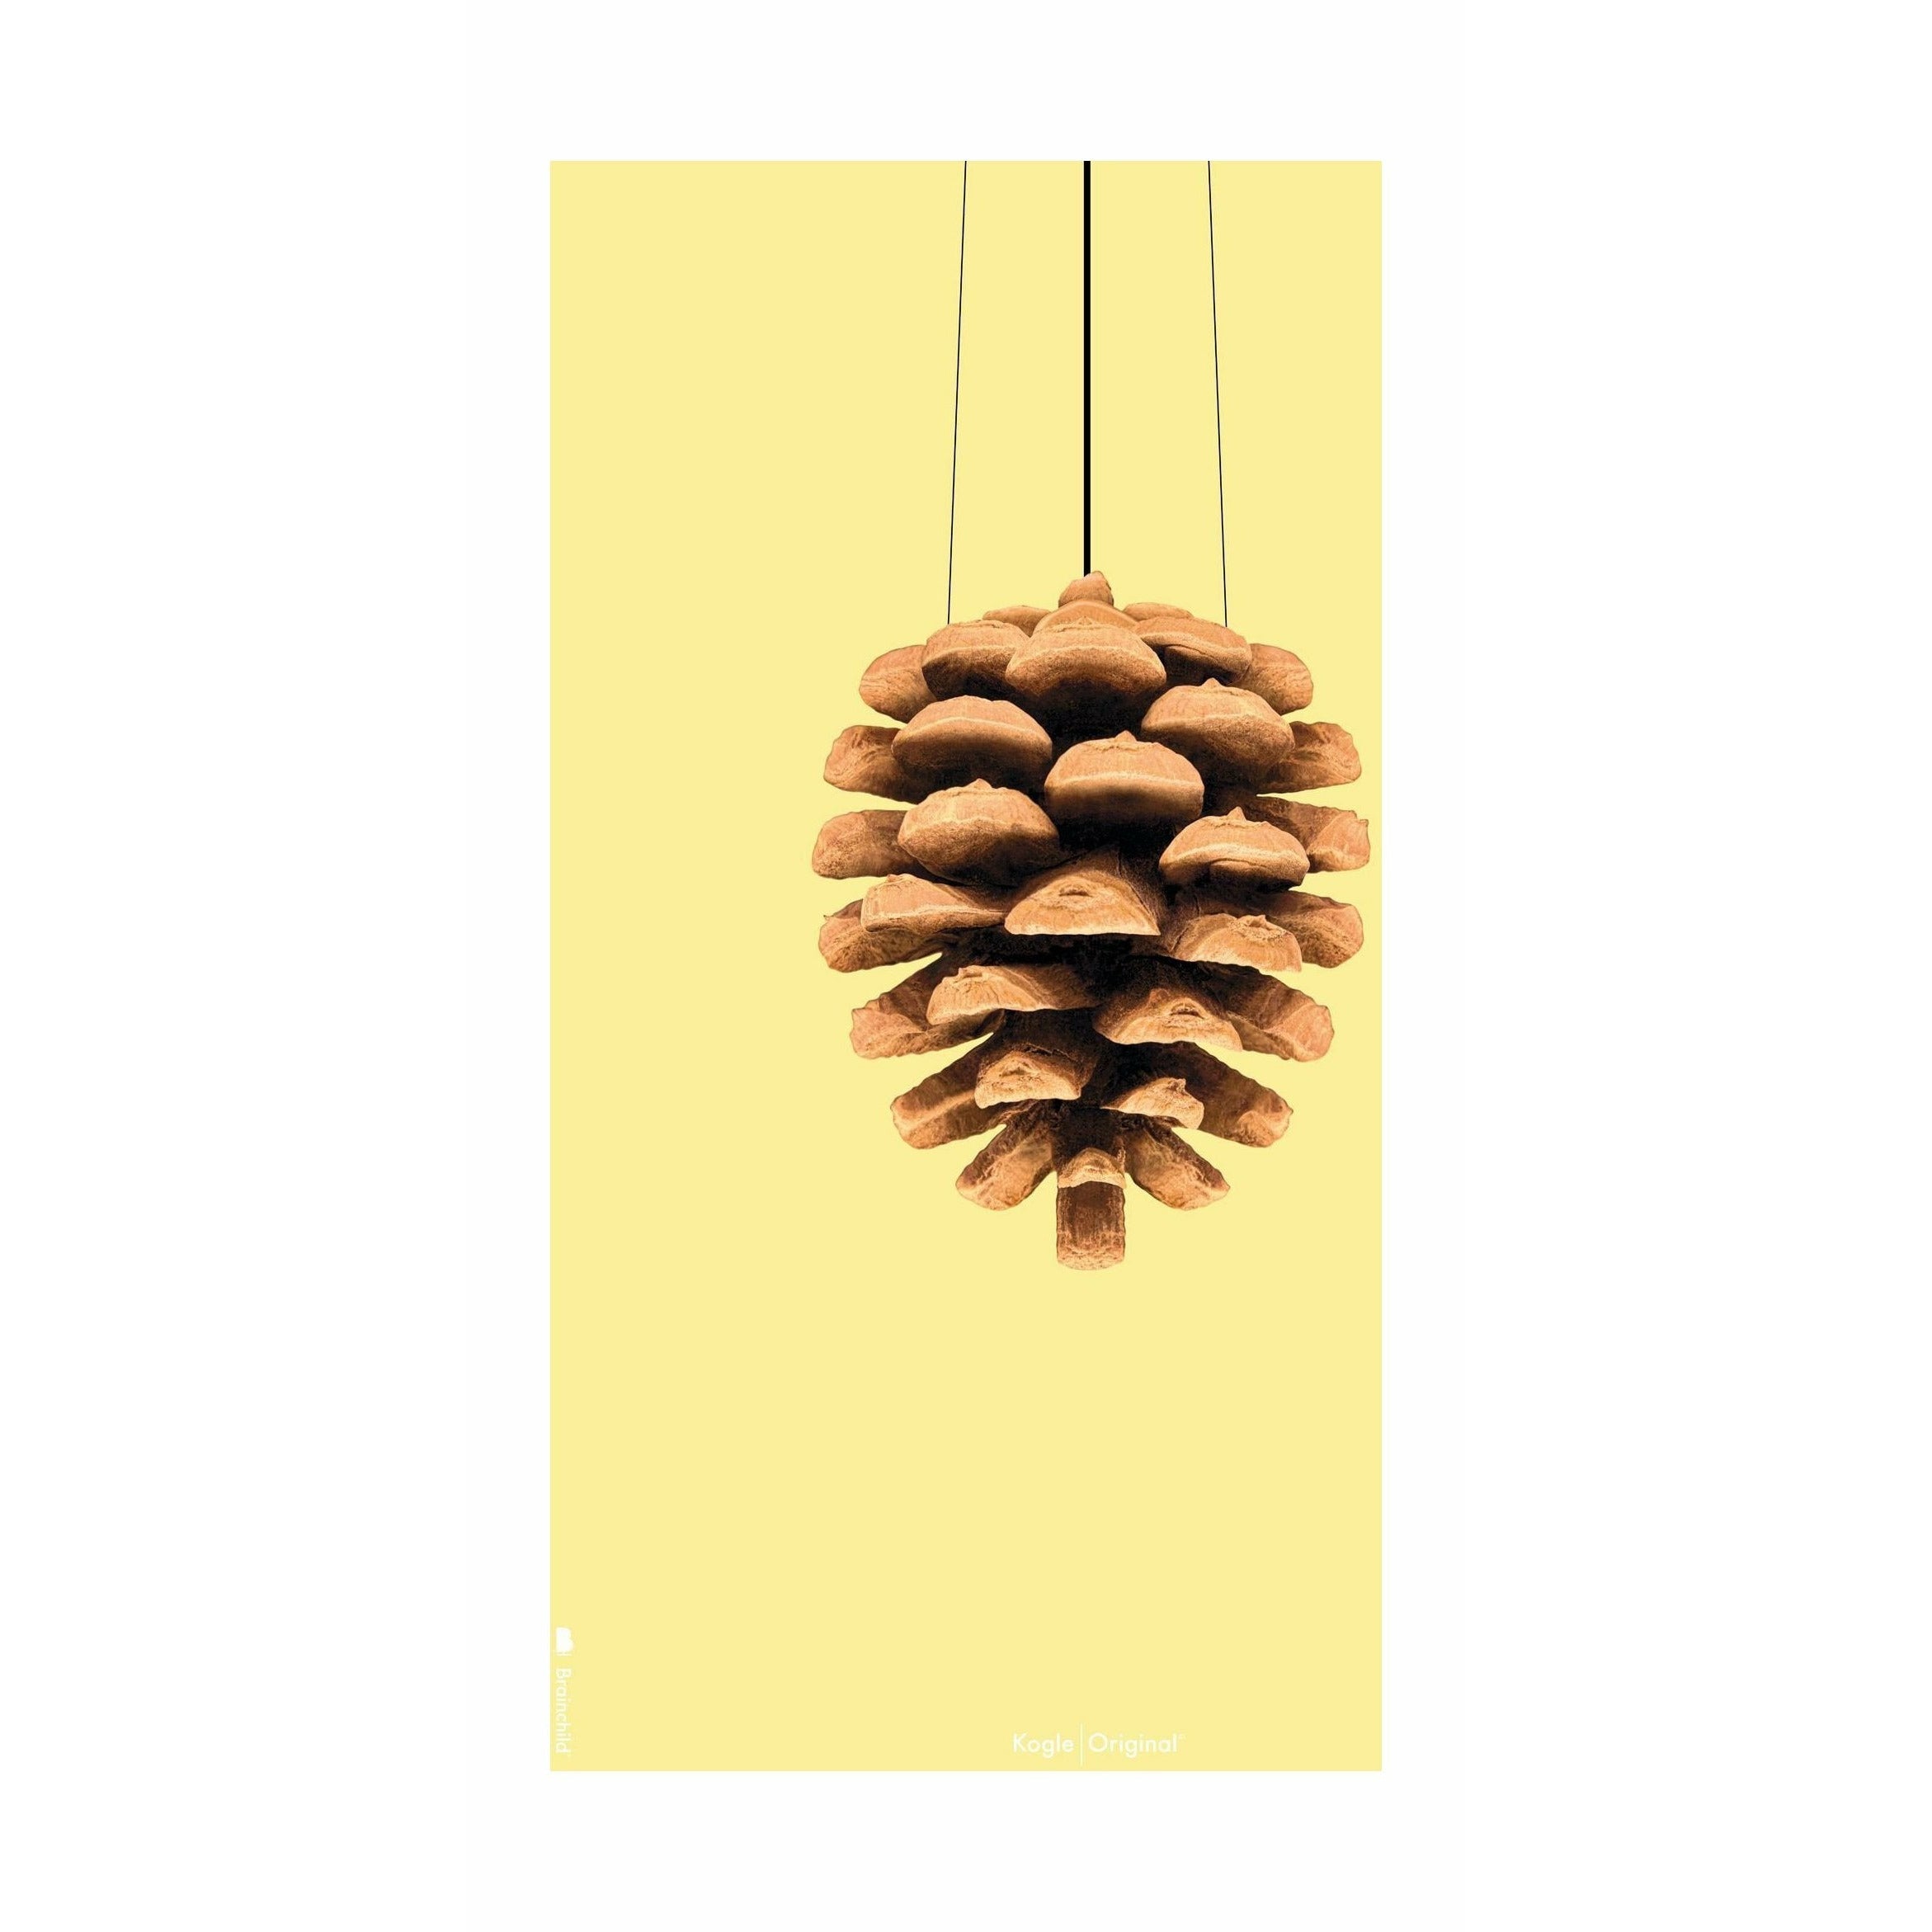 Brainchild Pine Cone Classic Poster ohne Rahmen A5, gelber Hintergrund